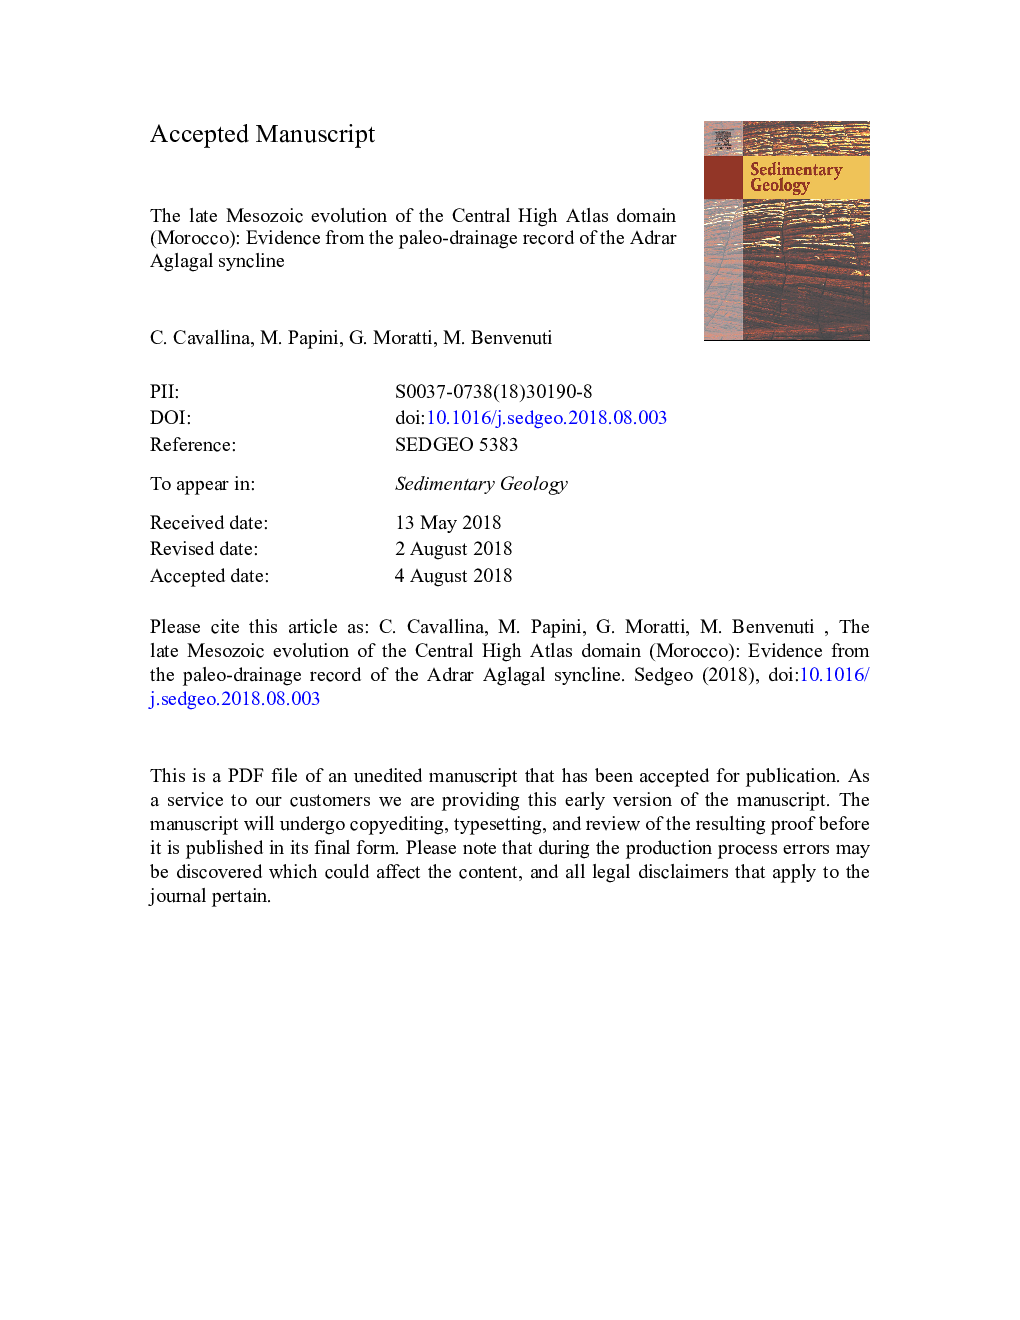 تکامل مازوزویک در دامنه اطلس مرکزی (مراکش): شواهدی از رکورد پالو-زهکشی سنکلیه آدارآگلگال